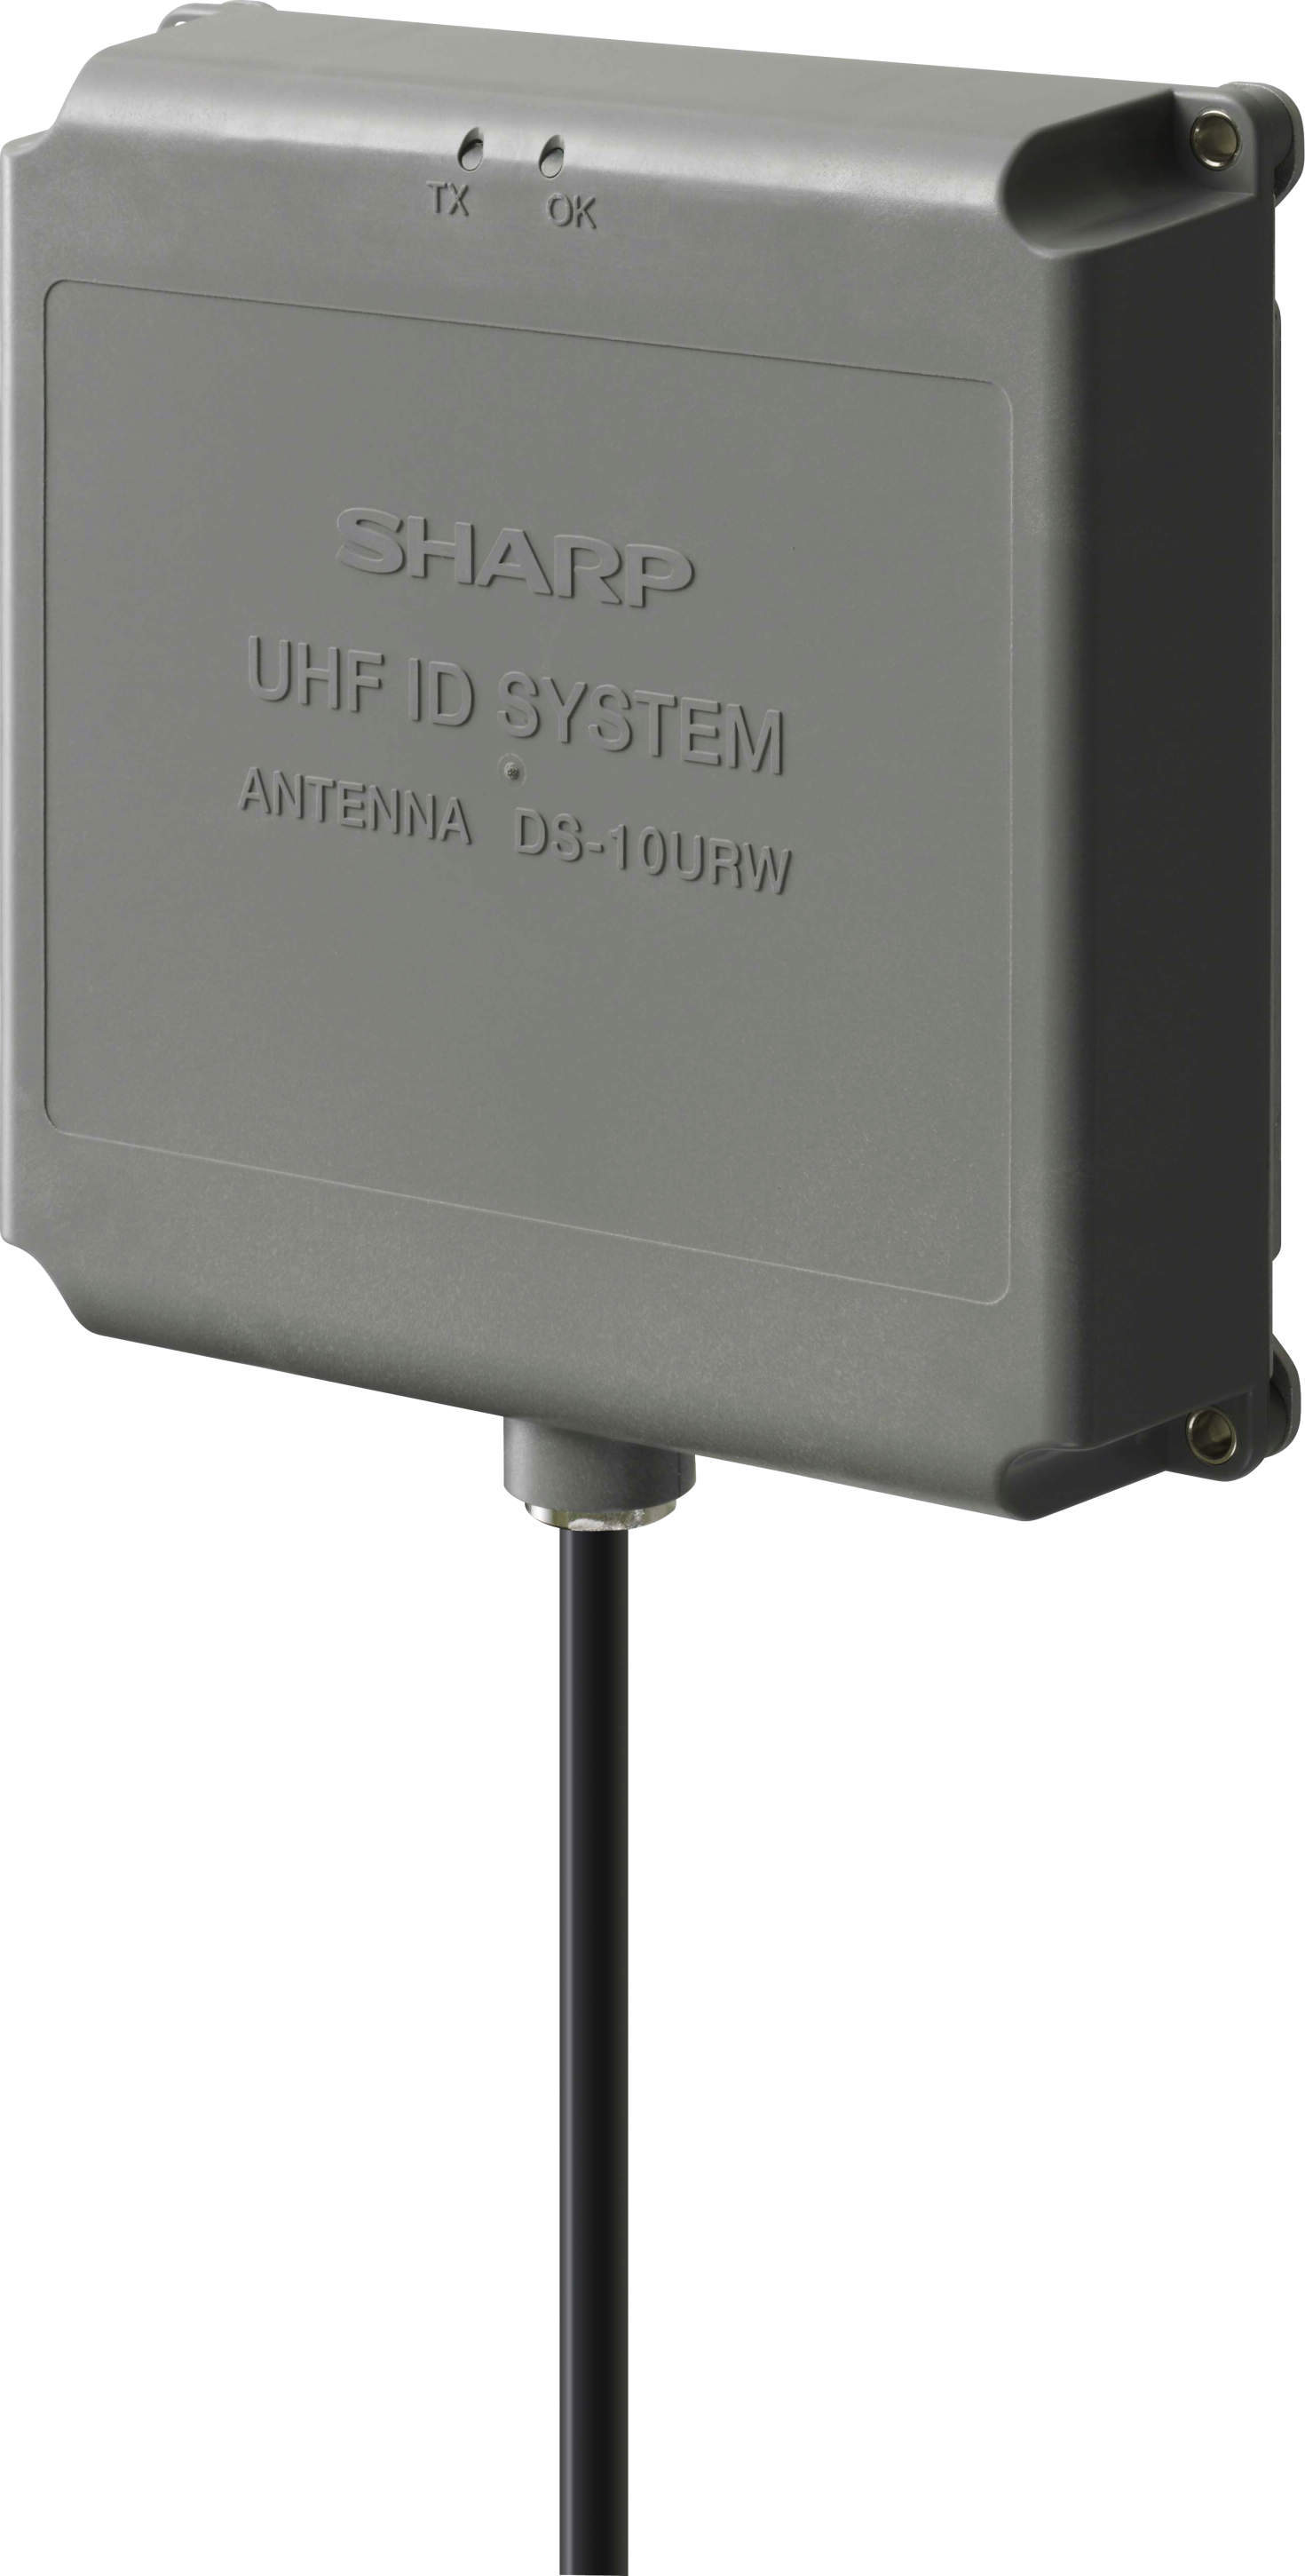 シャープ(株) 天线一体型激光UHF带RFID系统DS-10 ROW / 20urW